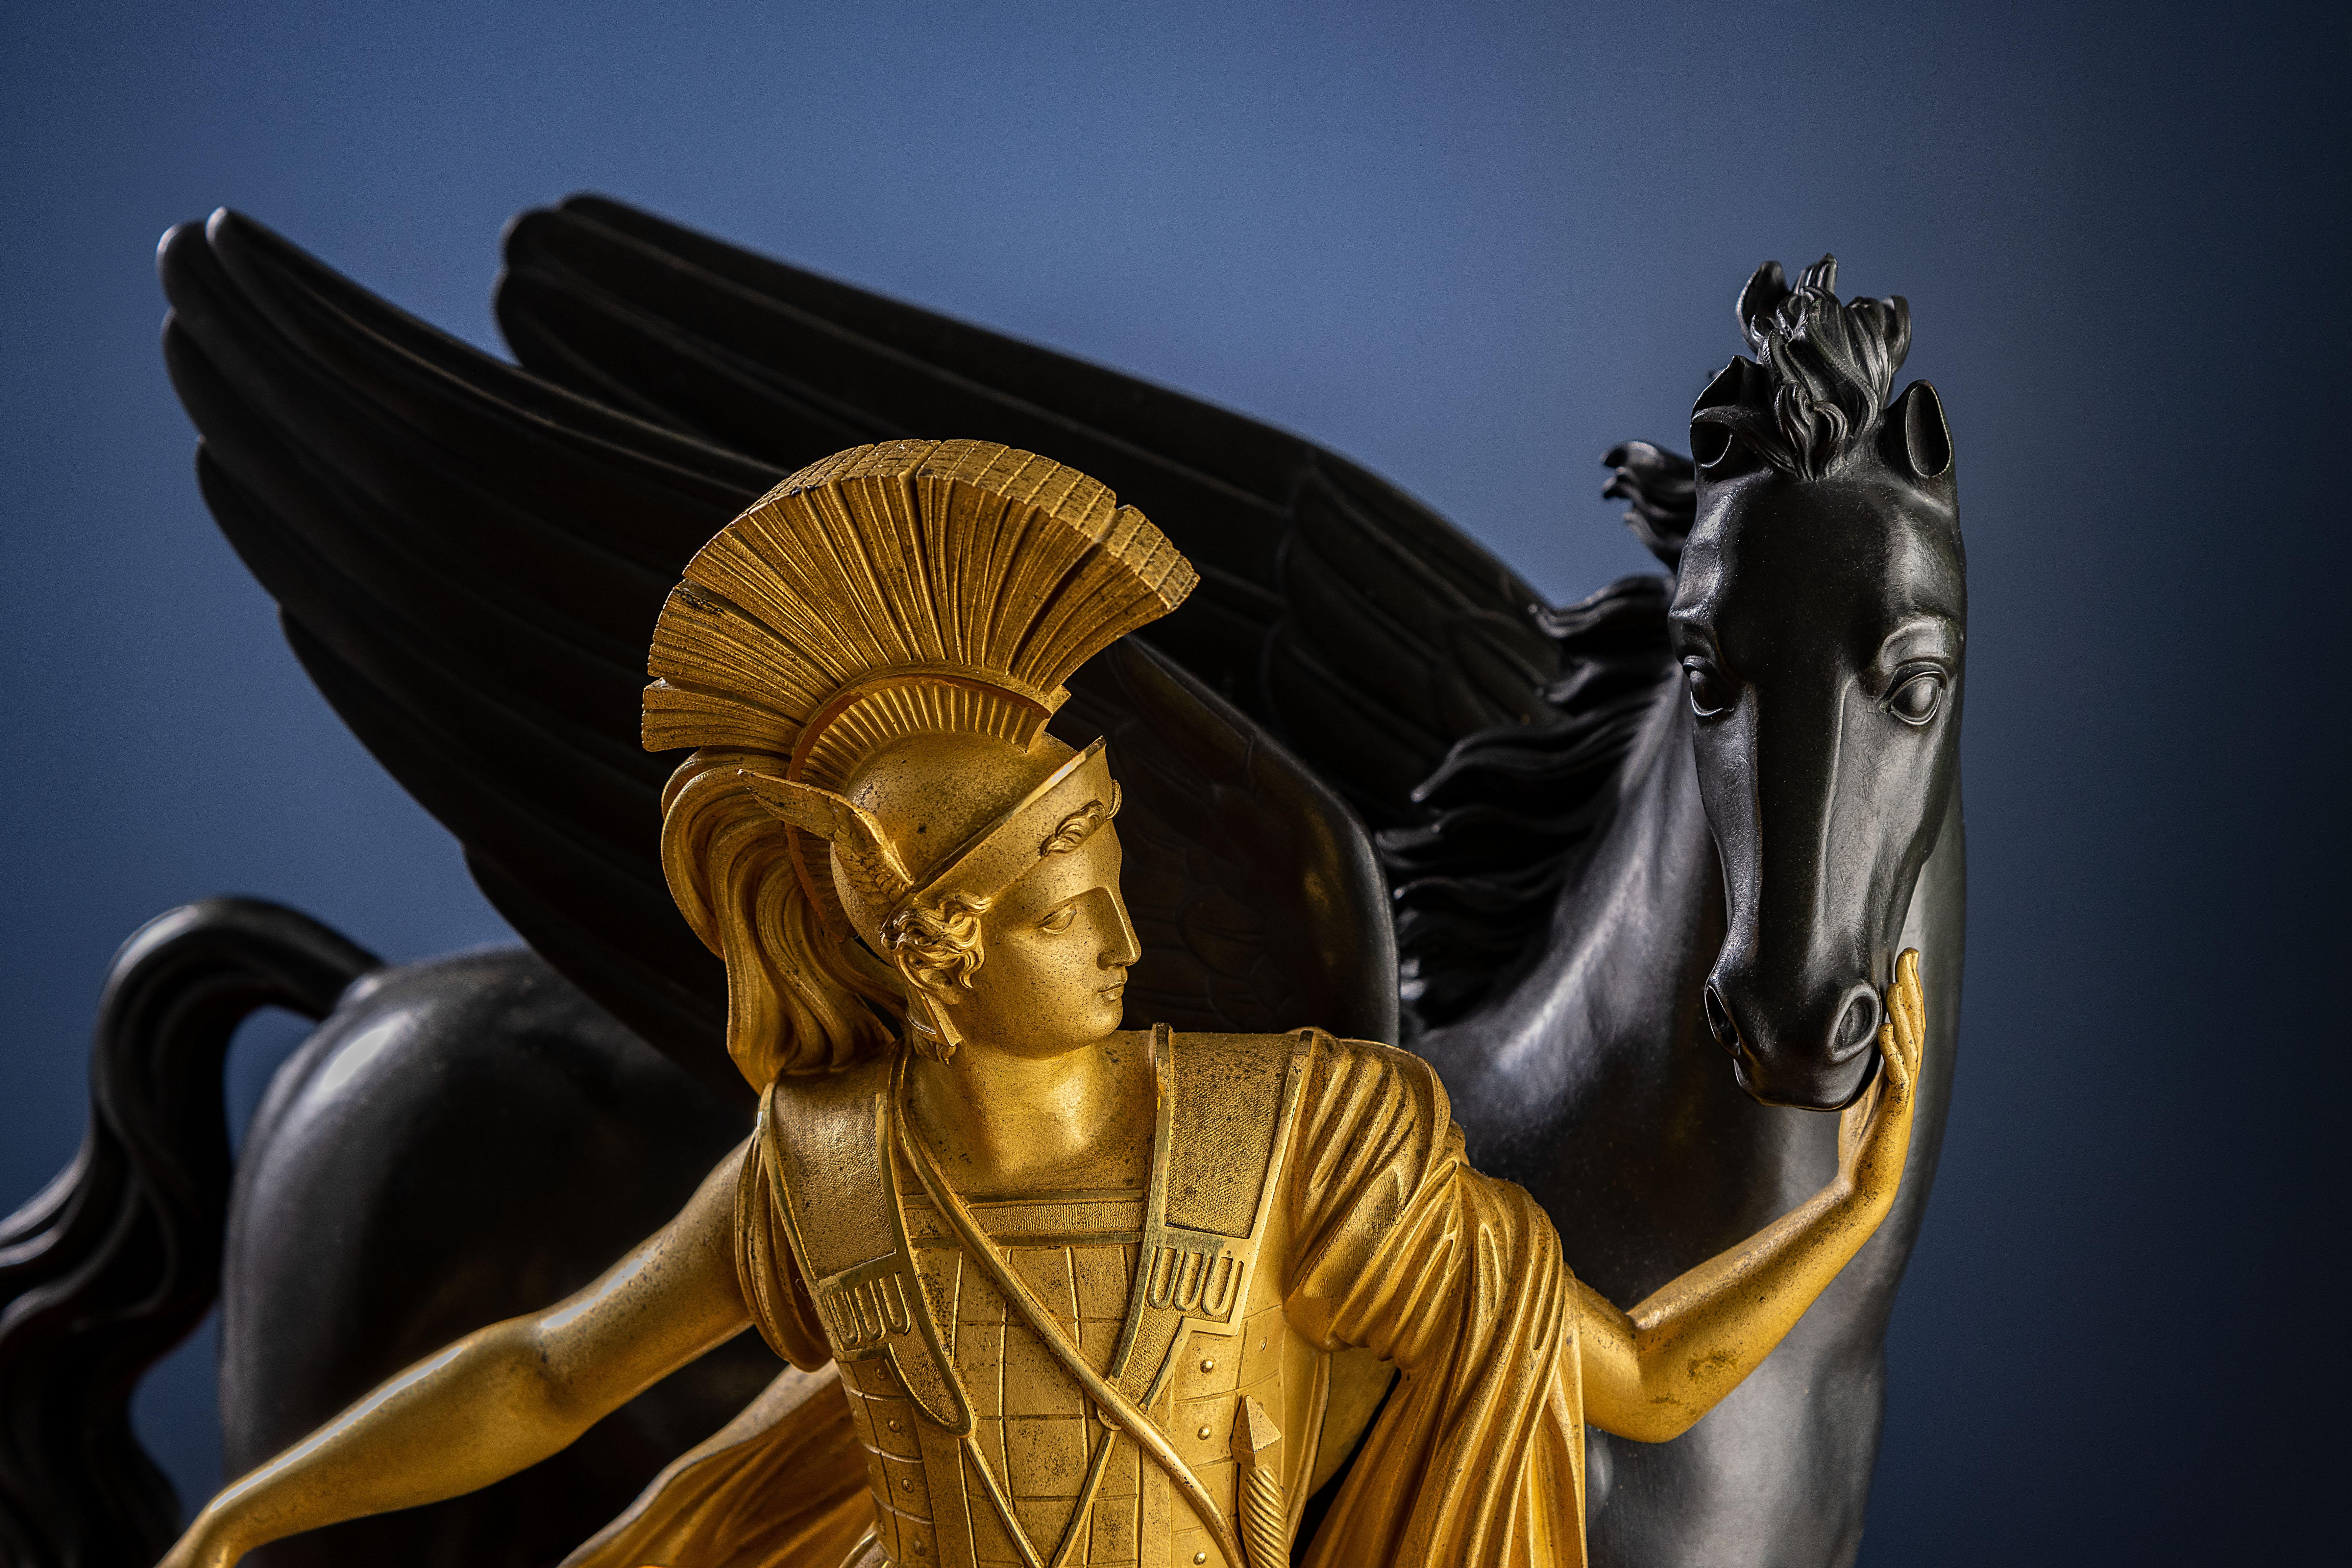 Figures et cadre en bronze doré et patiné sur un socle en porphyre rouge égyptien, attribué à Luopis-Isidore Choiselat. (Choiselat-Gallien). Cadran doré avec chiffres romains et aiguilles Breguet en acier bruni, marqué 